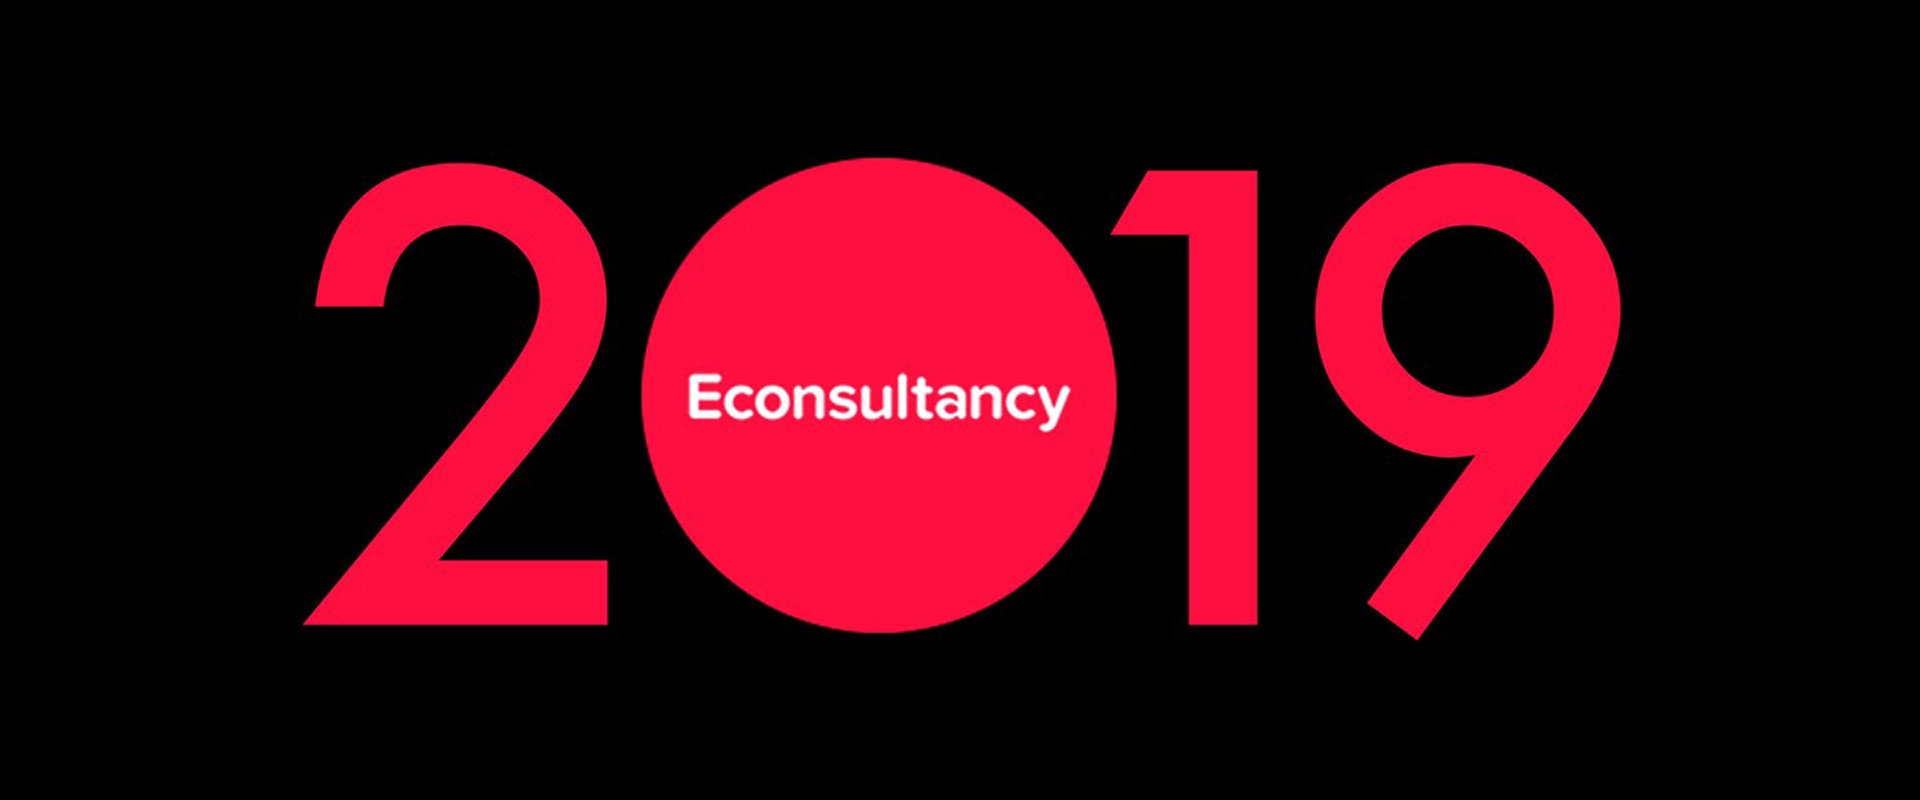 econsultancy's 2019 digital trends